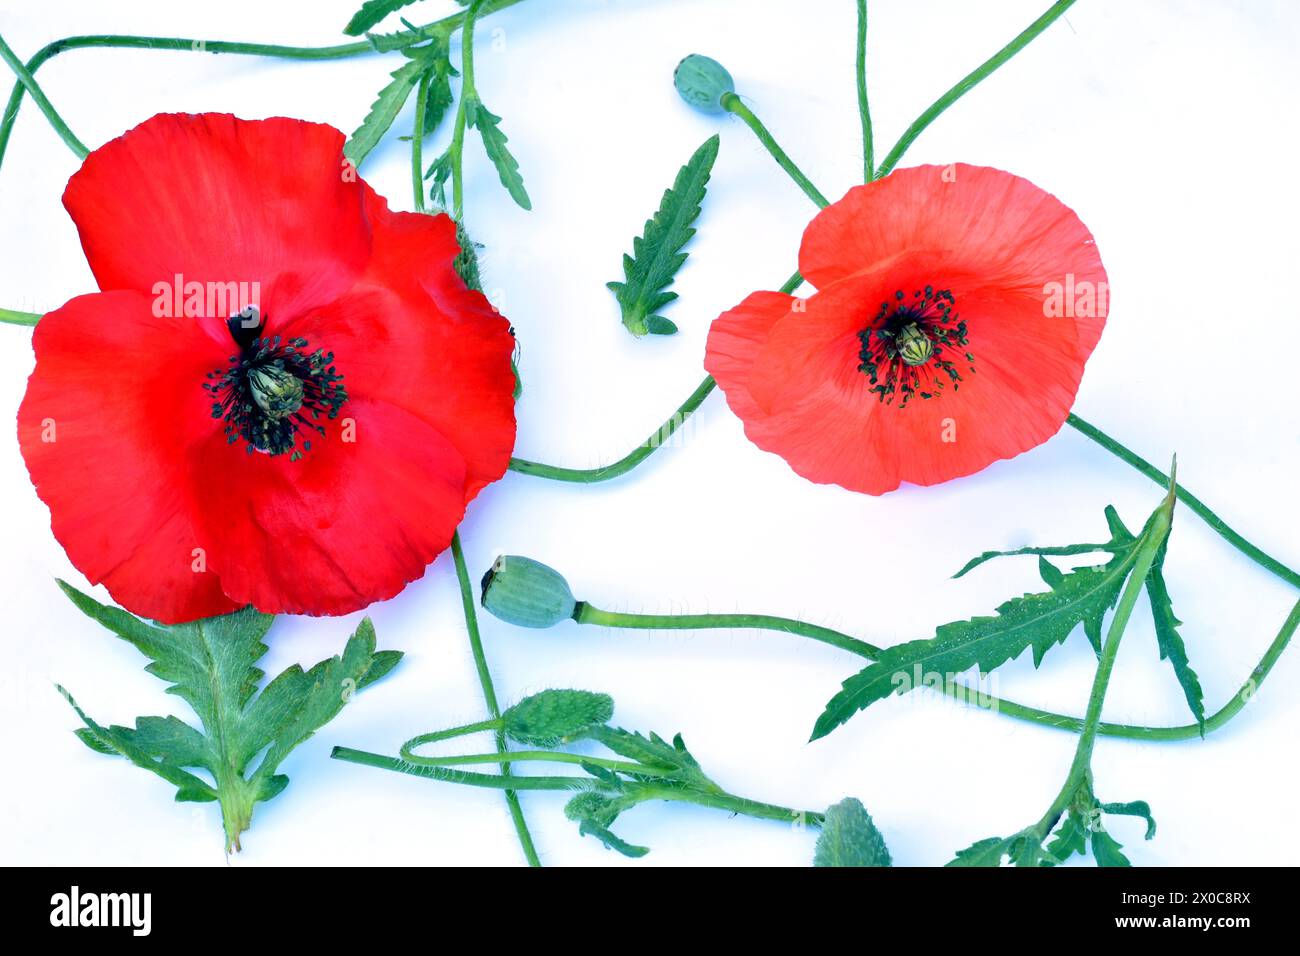 Disegno trama. Su sfondo bianco, due fiori di papavero rosso, lunghi steli della pianta e scatole con semi di papavero. Foto Stock